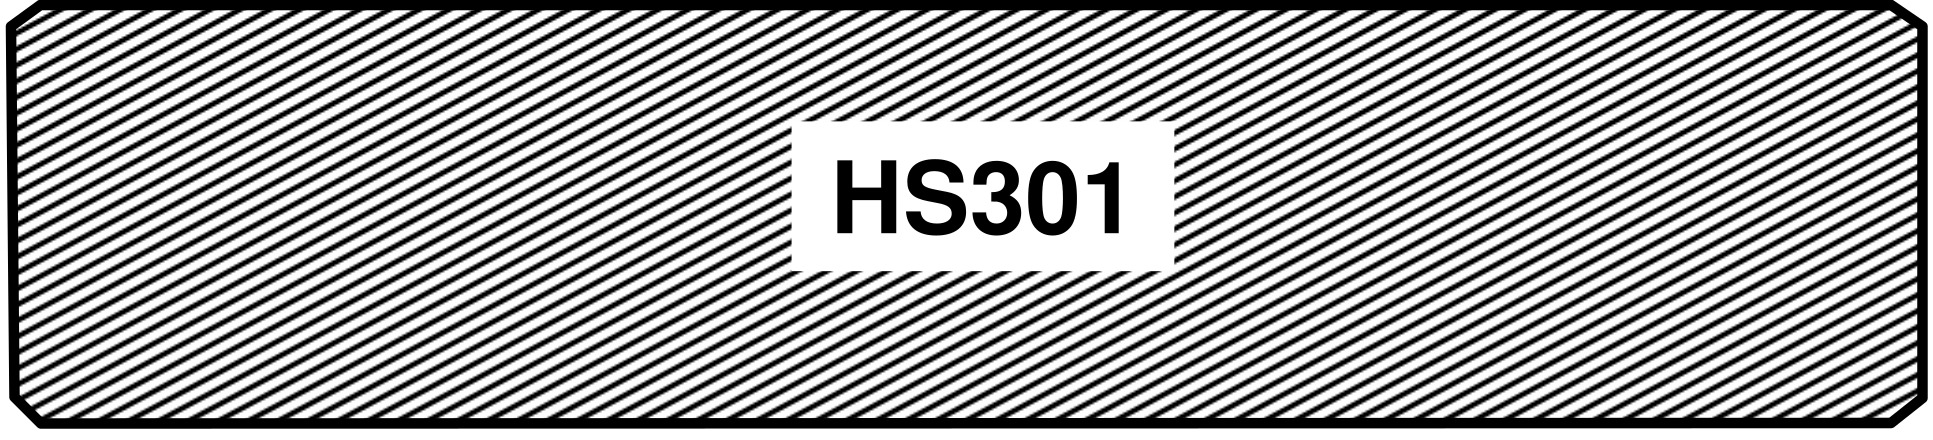 hs301_b